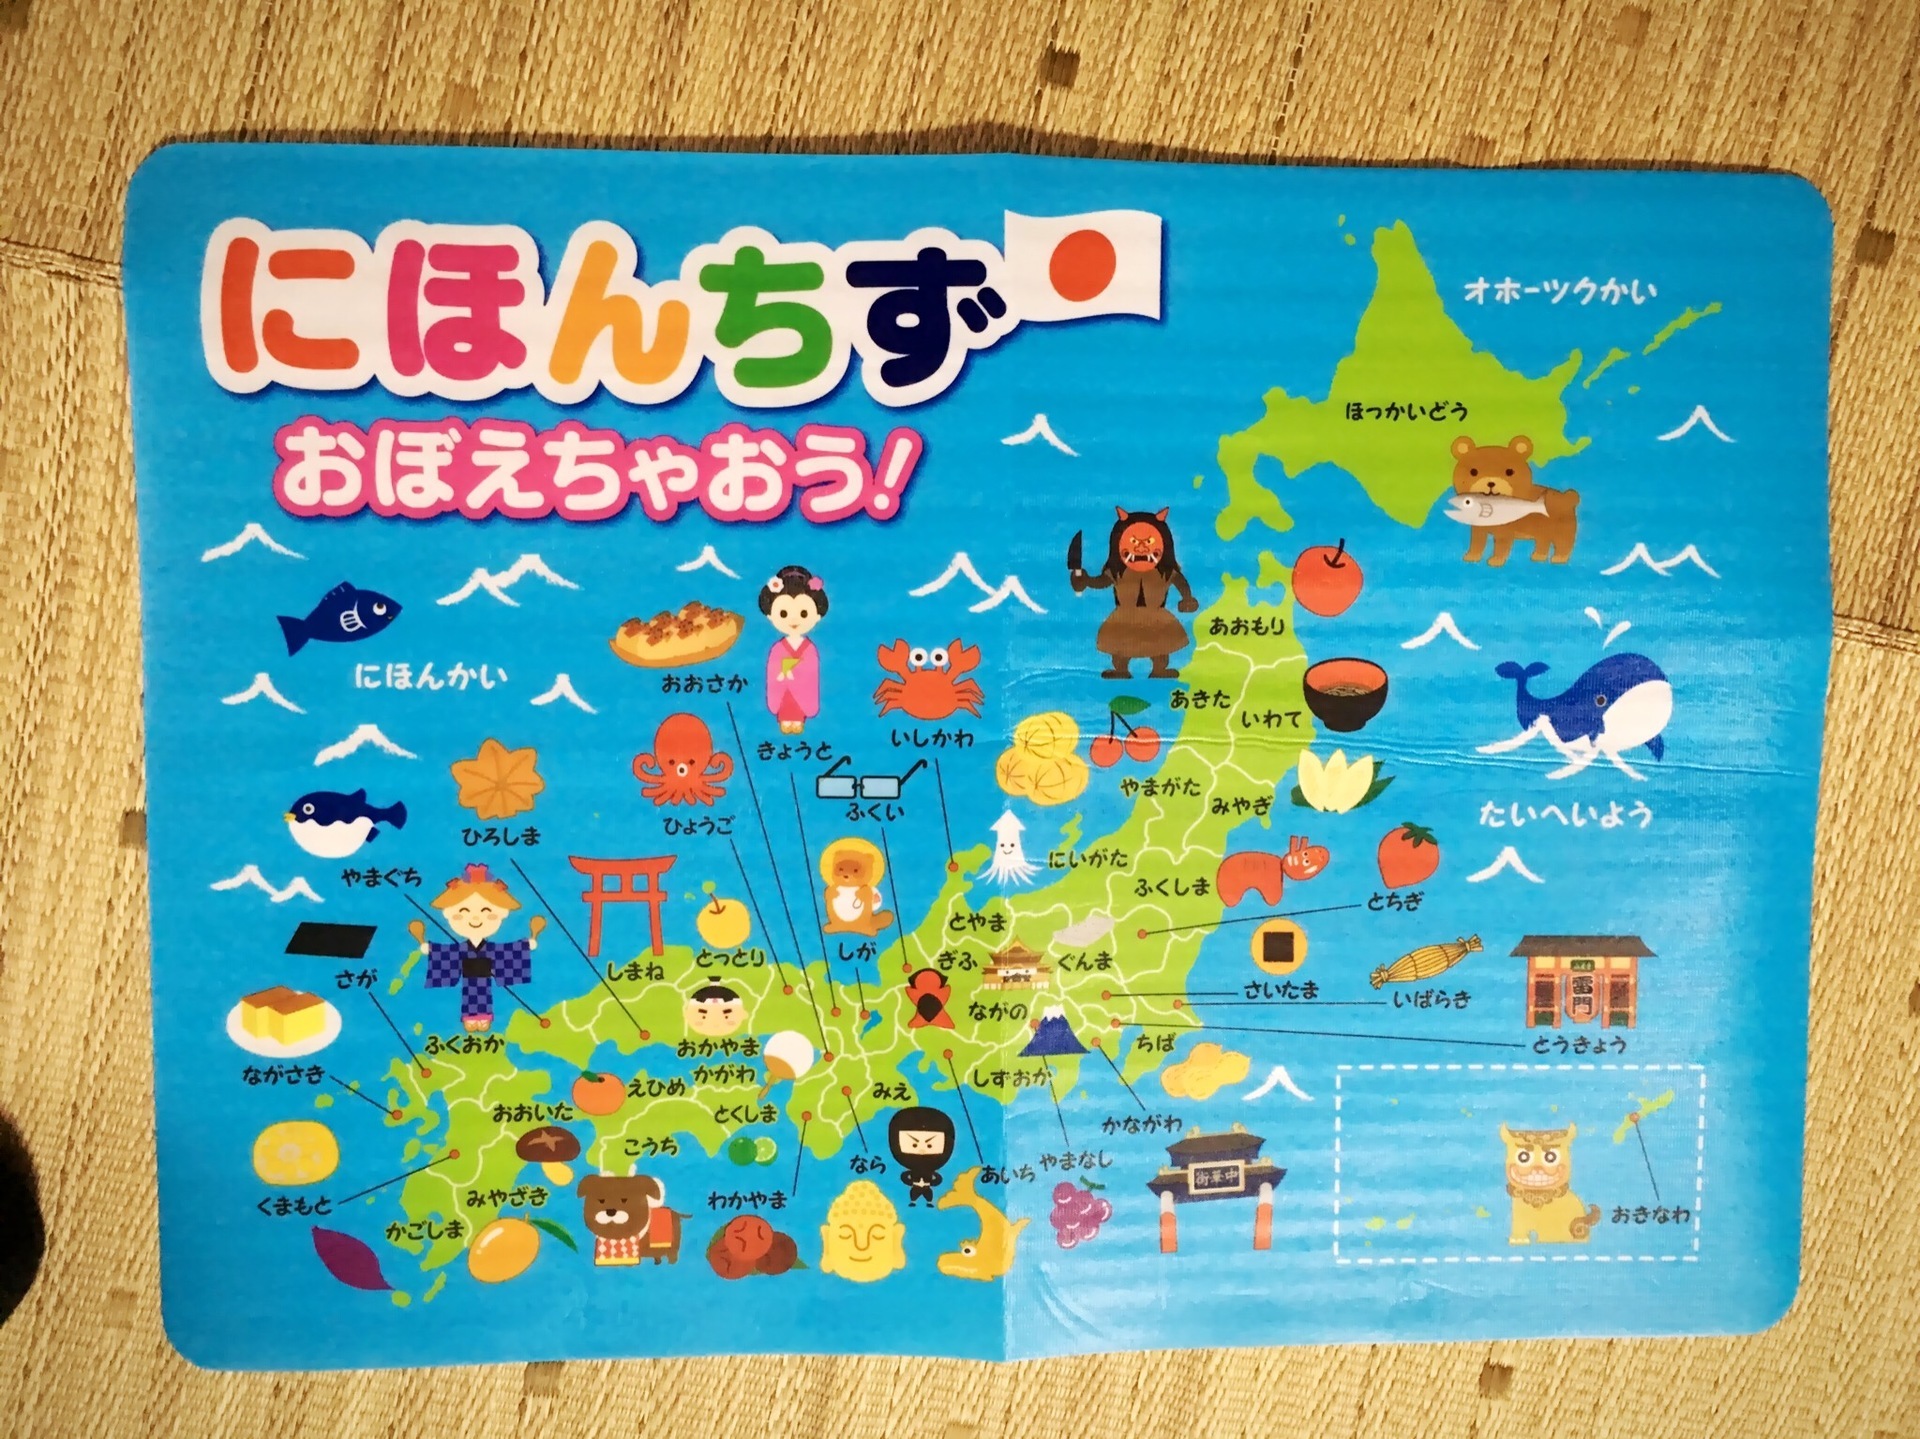 キャンドゥの日本地図が全部ひらがなで幼児向けでイイネ 百均 すみれもの日記